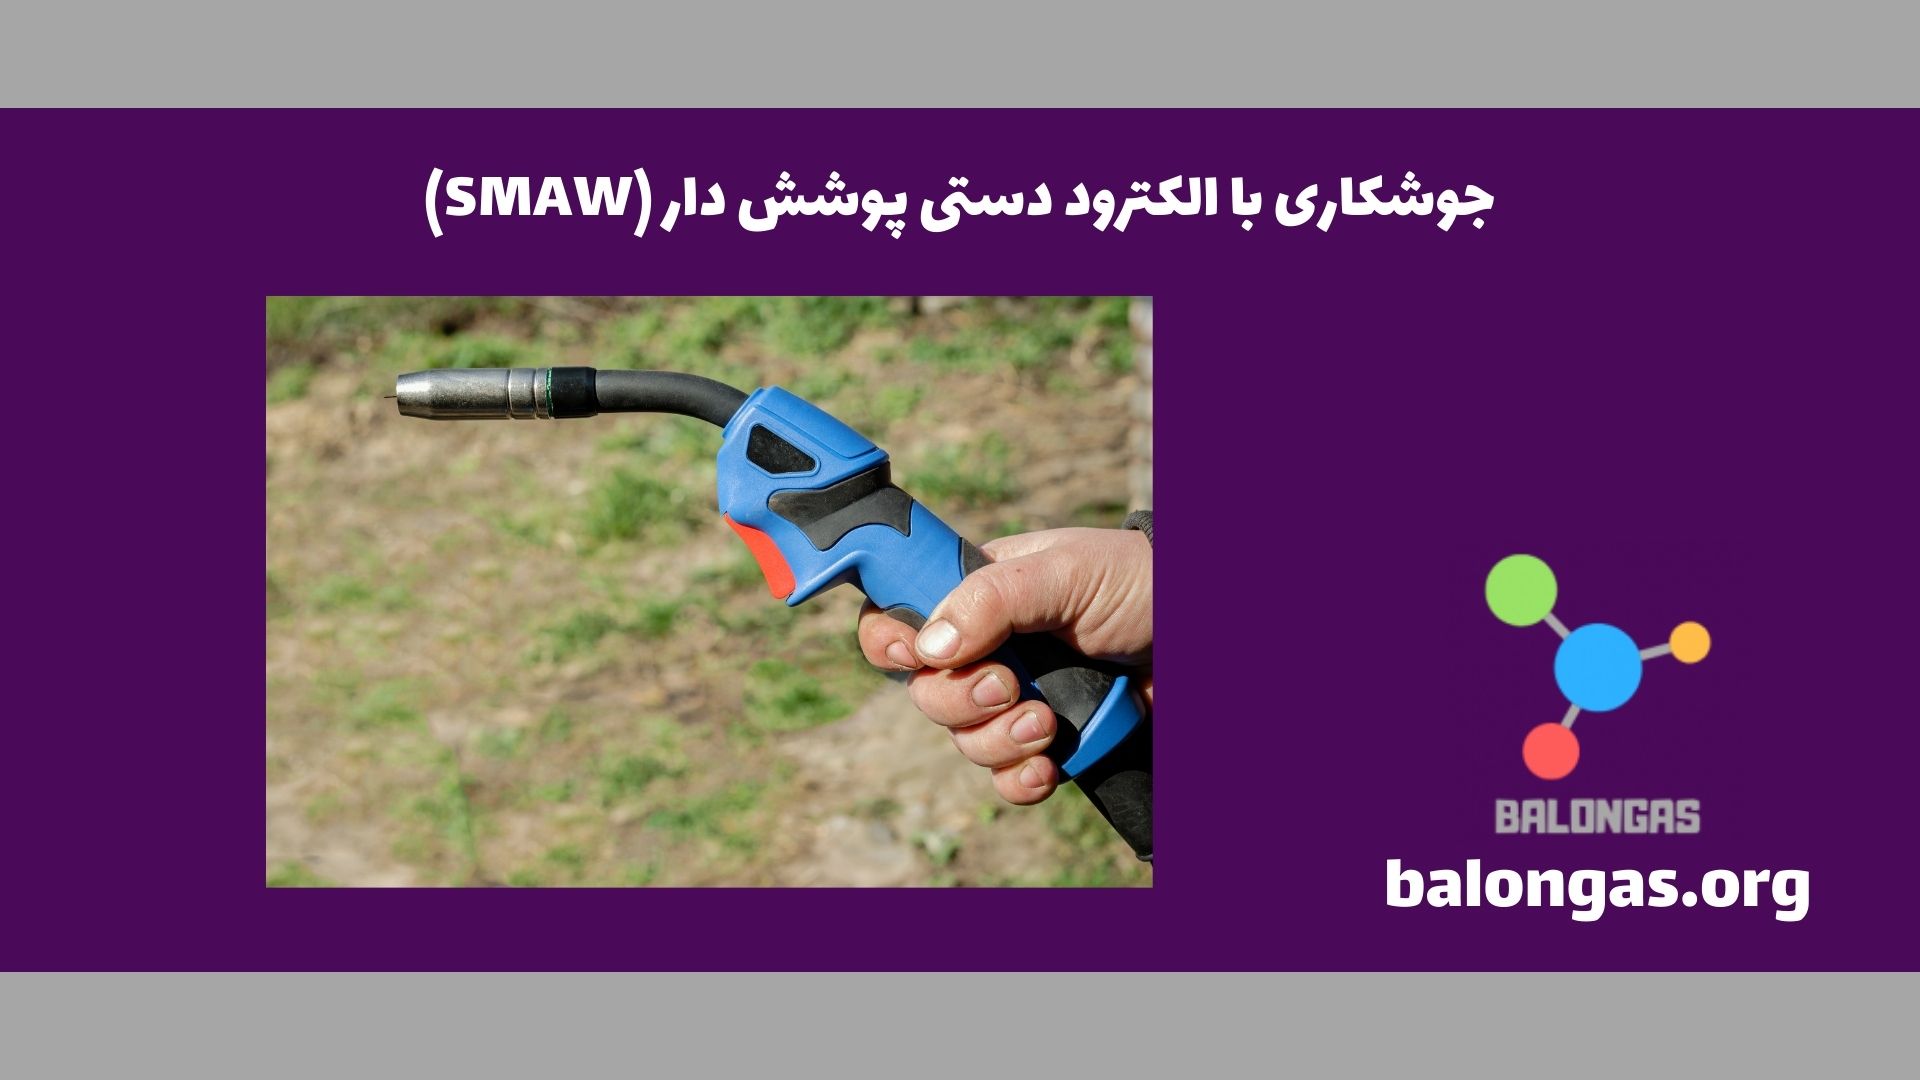 جوشکاری با الکترود دستی پوشش دار (SMAW)